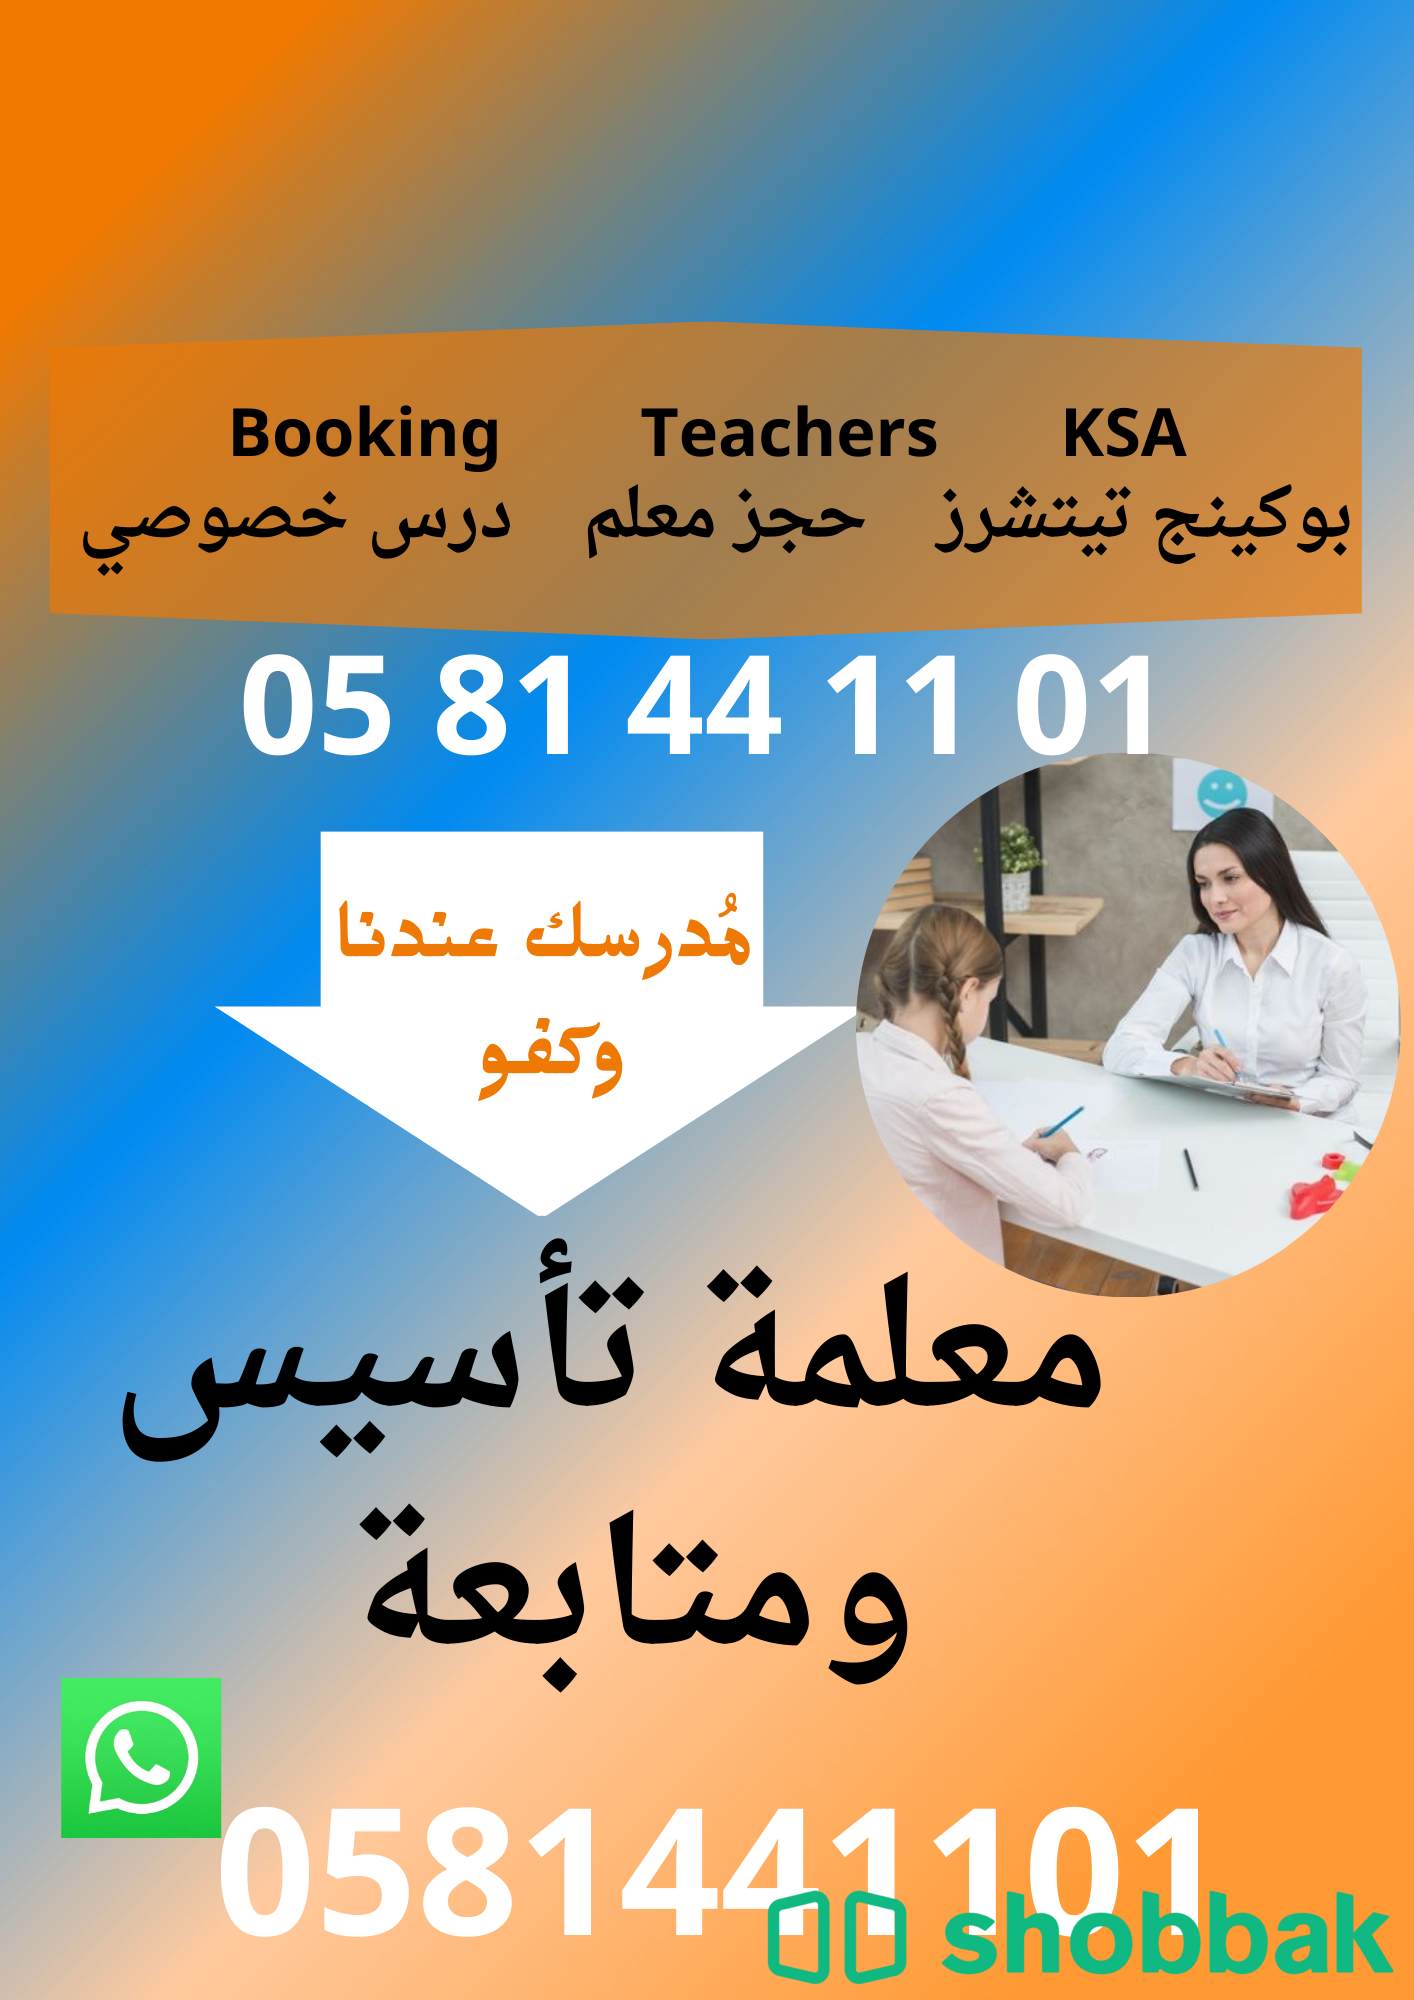 معلم ومعلمة تأسيس ومتابعة  Shobbak Saudi Arabia